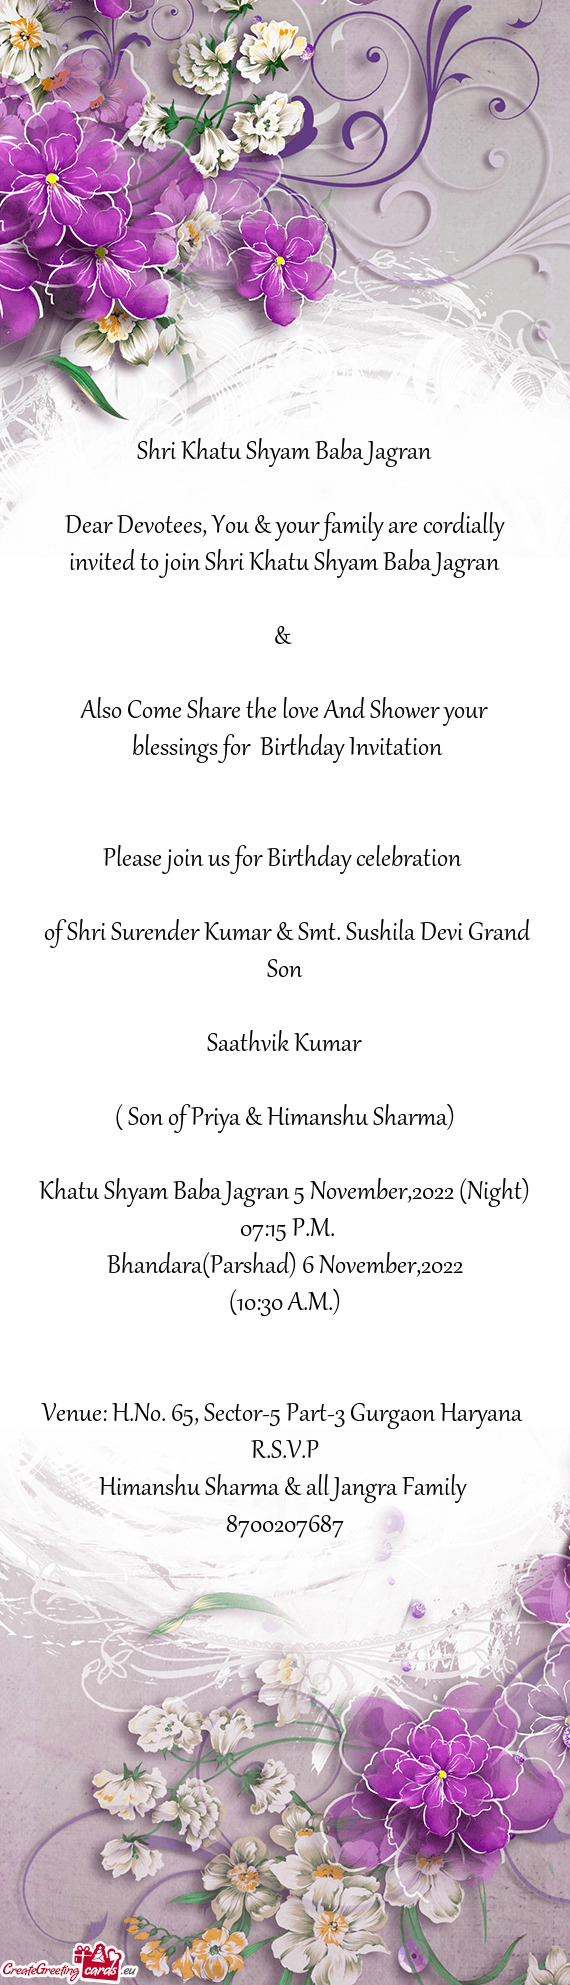 Of Shri Surender Kumar & Smt. Sushila Devi Grand Son